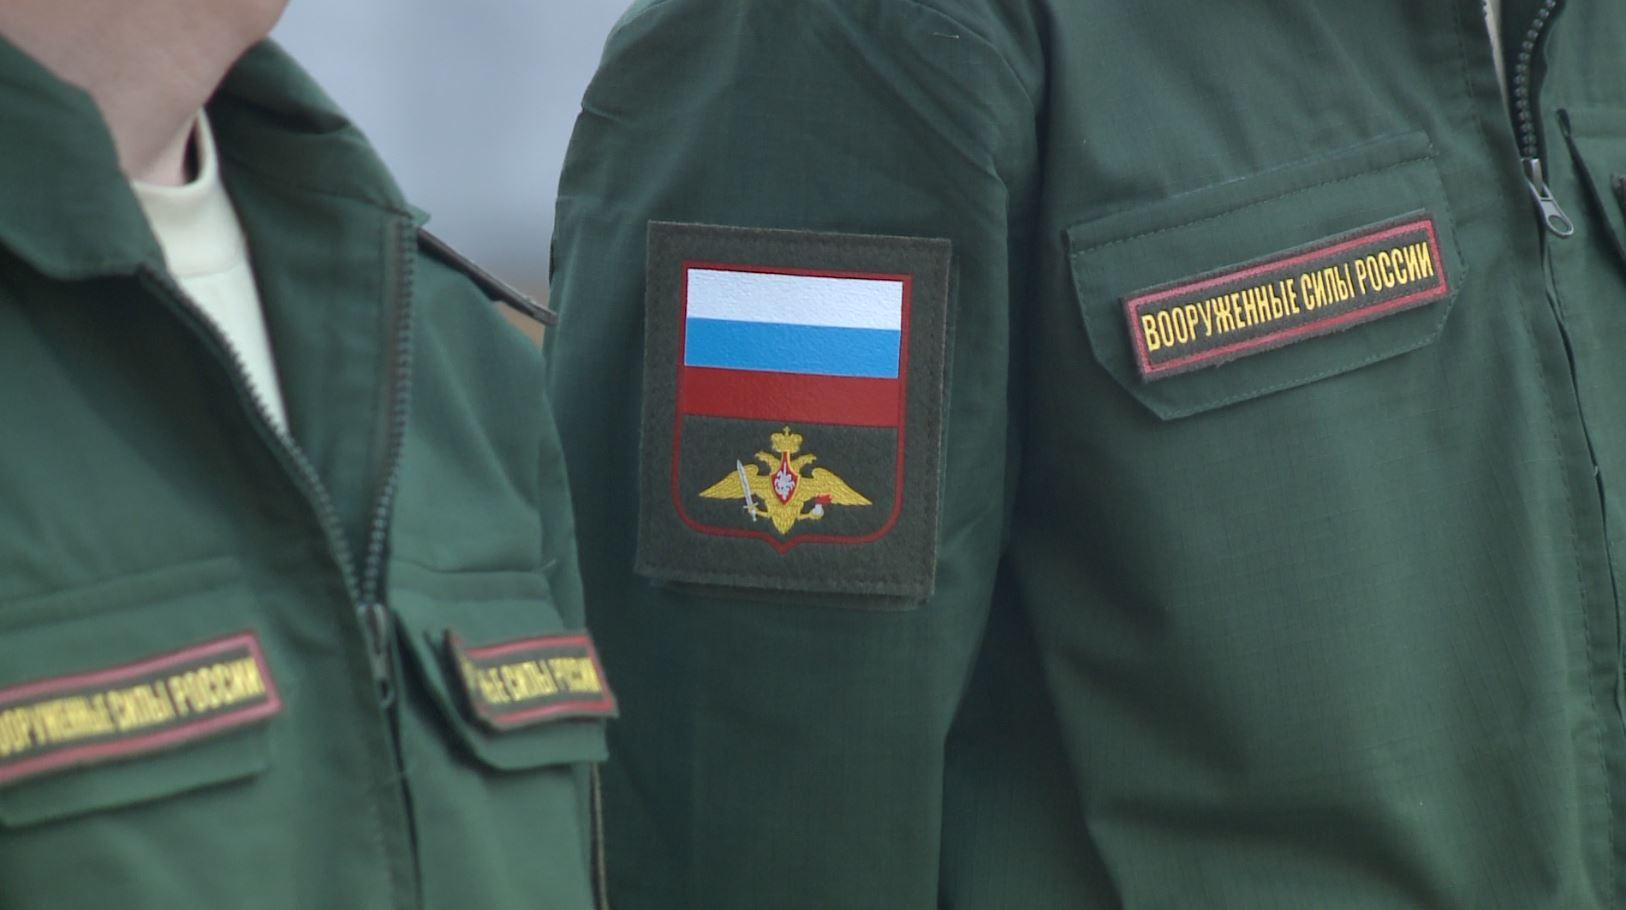 Модернизация российских военкоматов исключит ошибки при работе с данными граждан